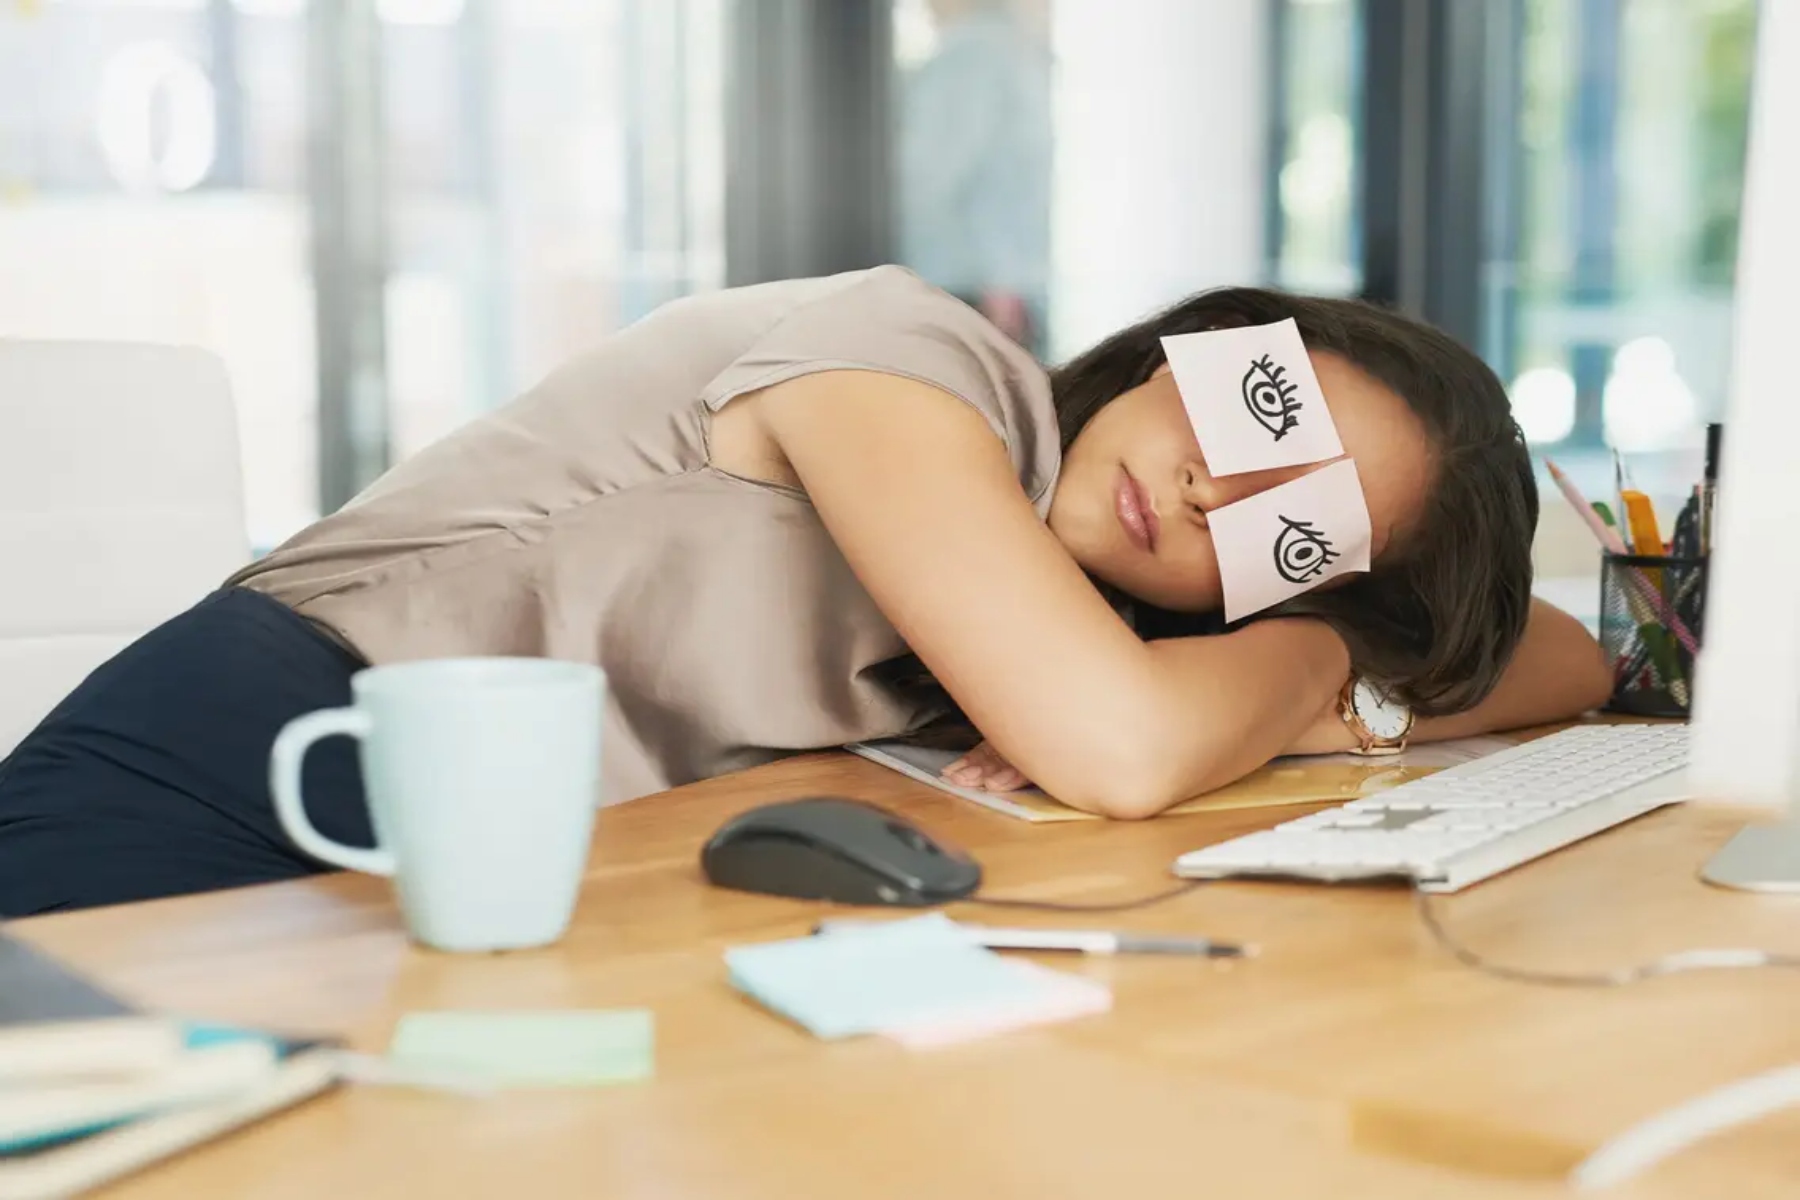 Ύπνος μεσημέρι: Τα οφέλη του σύντομου snooze κατά τη διάρκεια της ημέρας